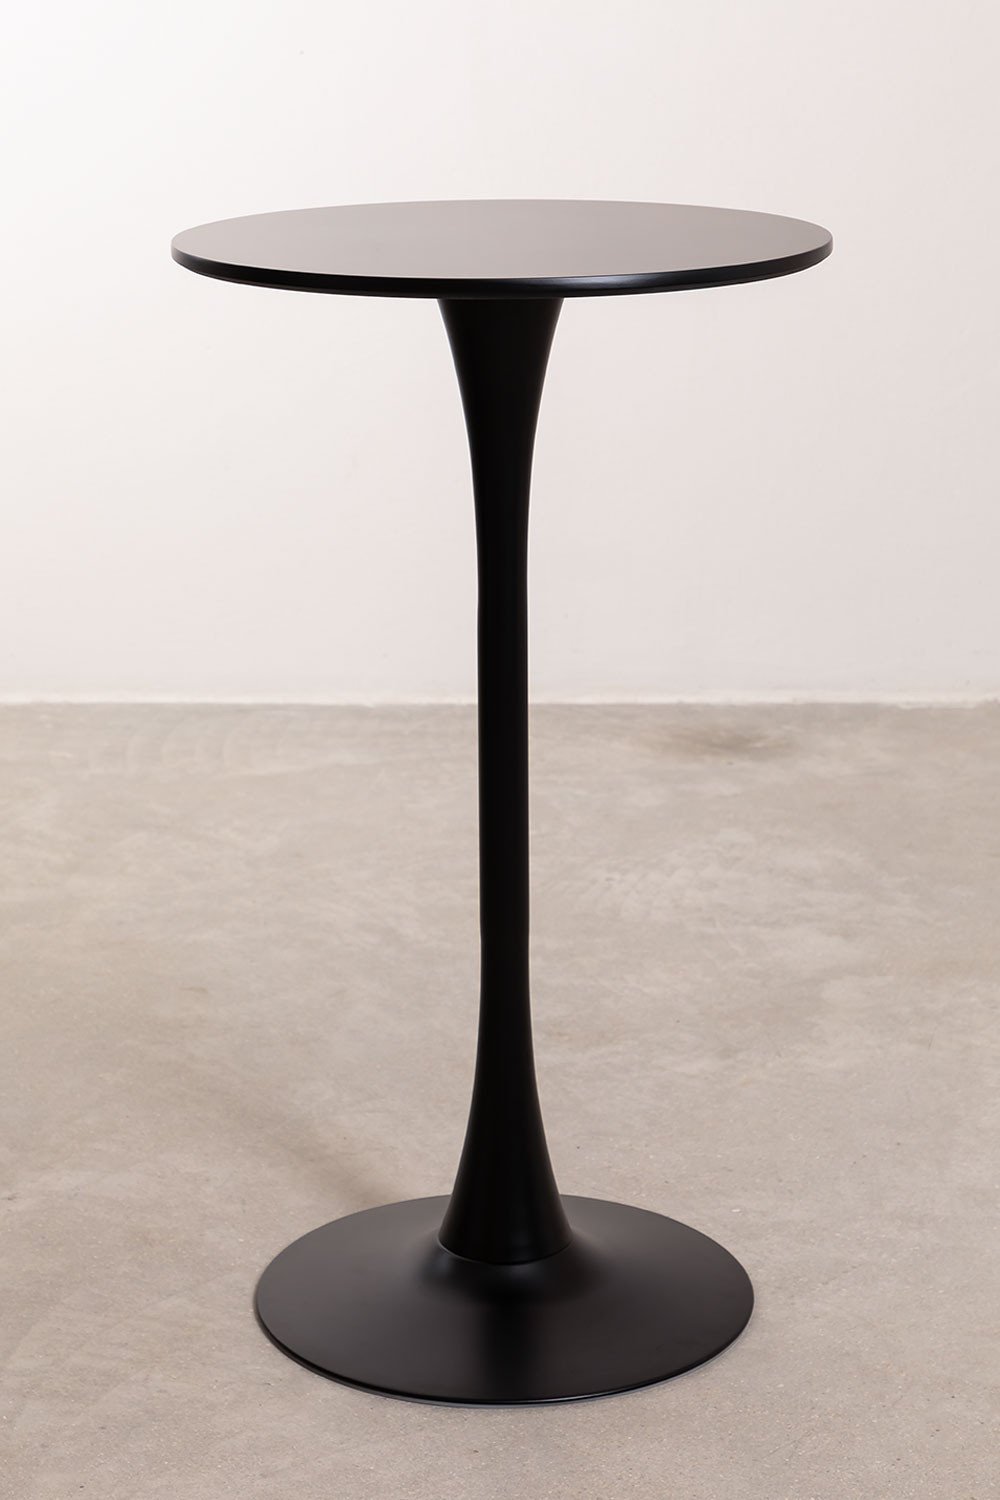 Table Haute Ronde en MDF et Métal (Ø60 cm) Ivet Style, image de la galerie 2